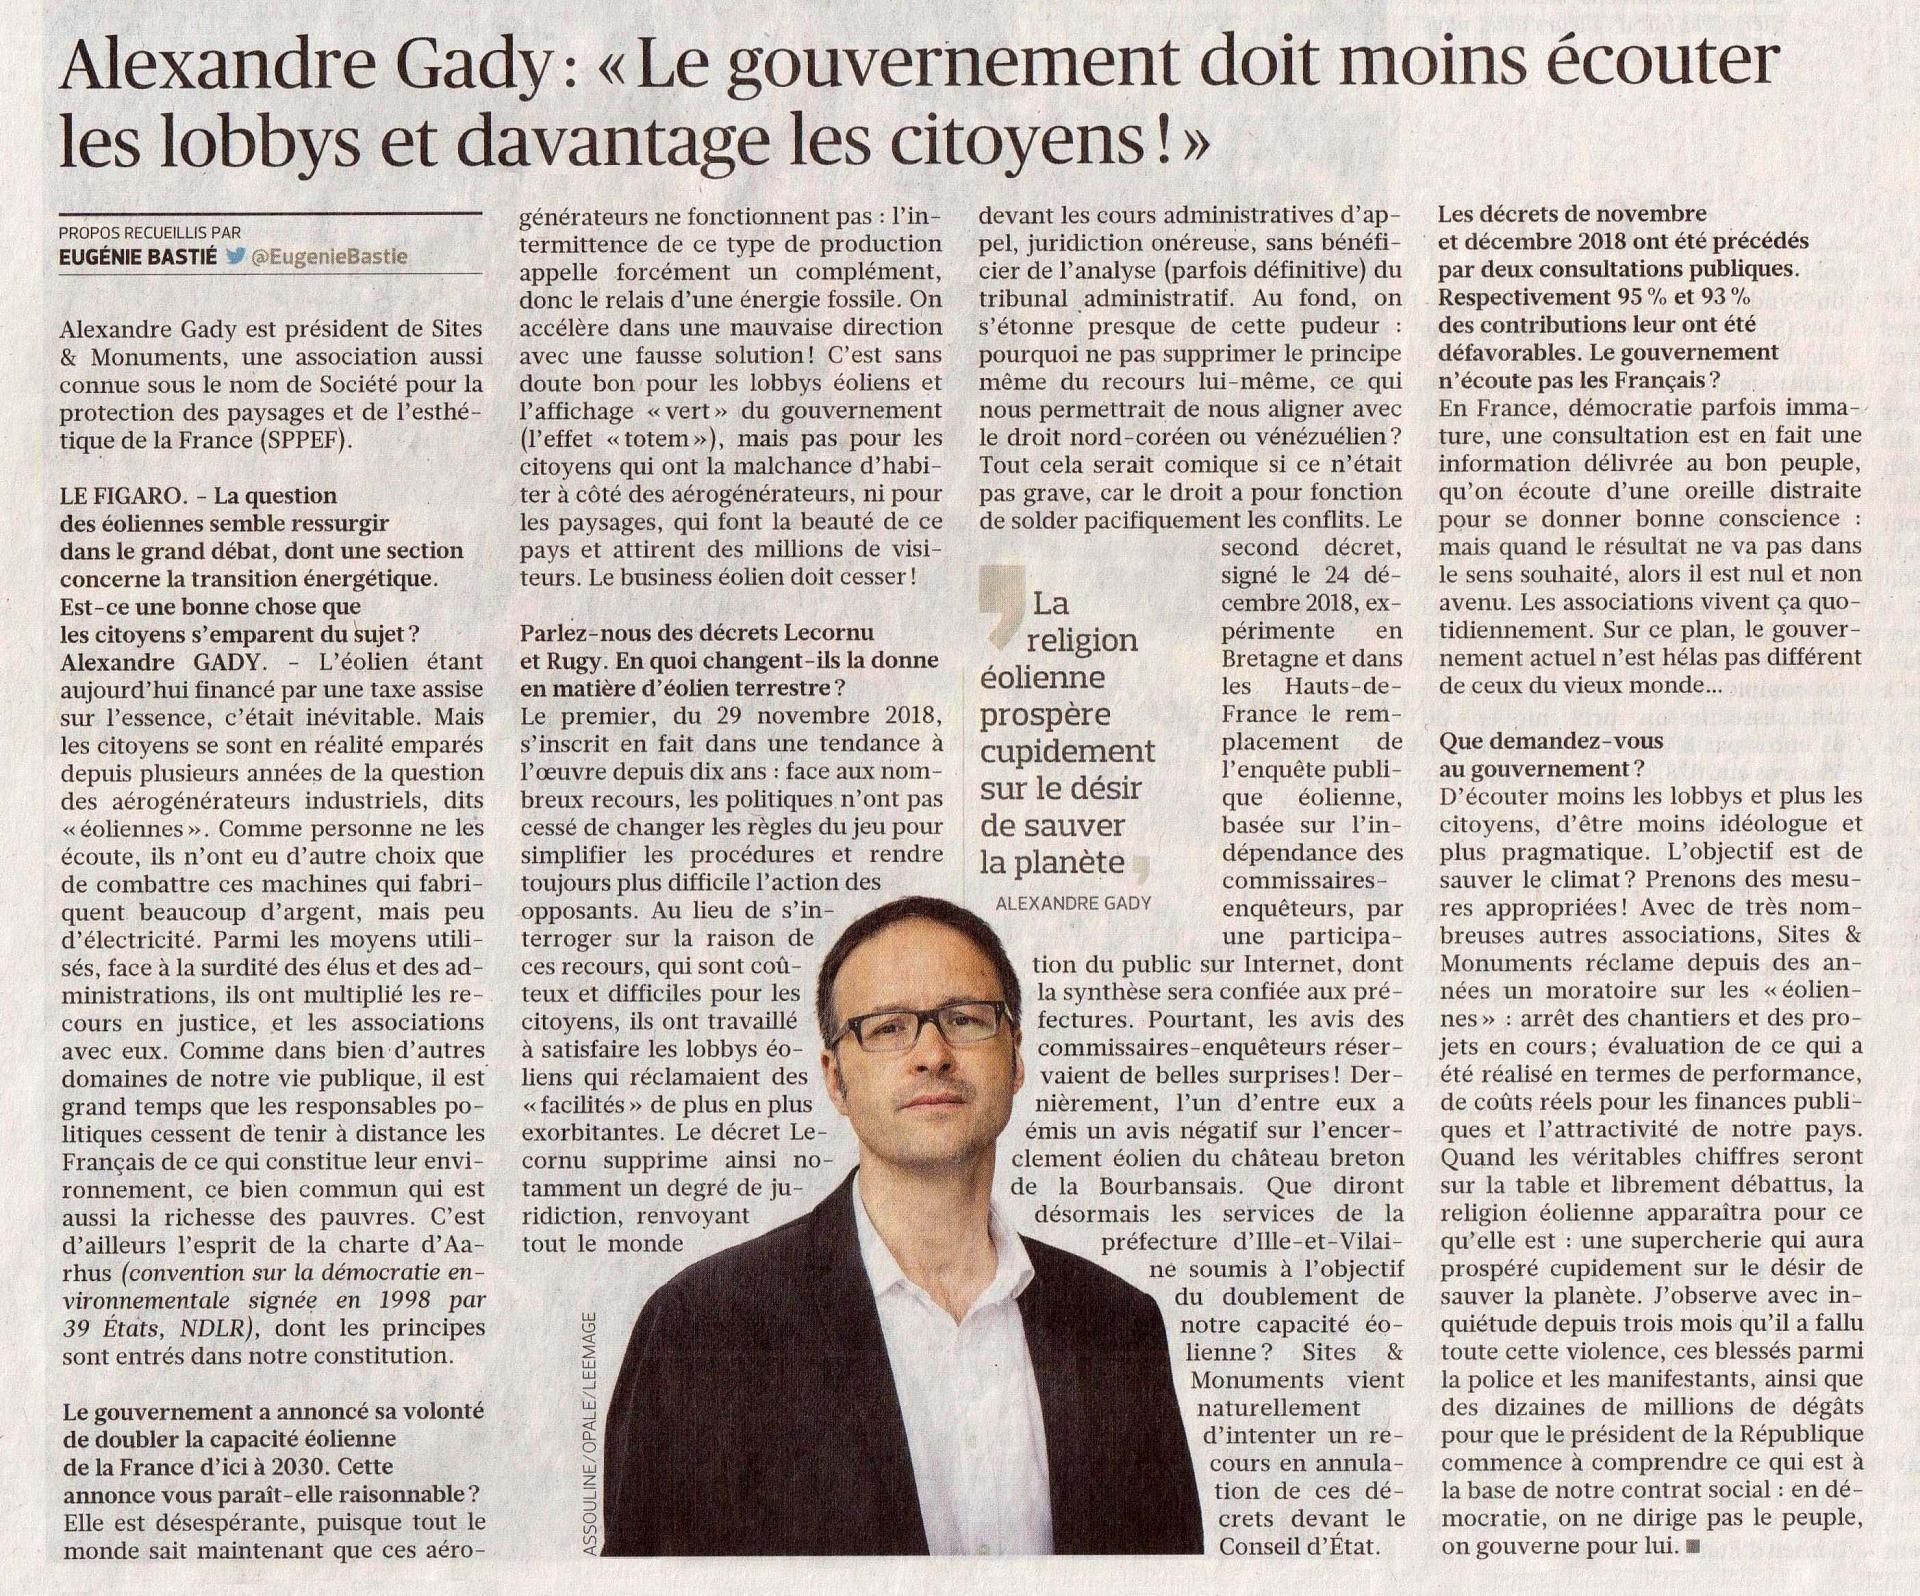 Gady, éoliennes, Le Figaro n° 23168 du 8 février 2019, p. 4